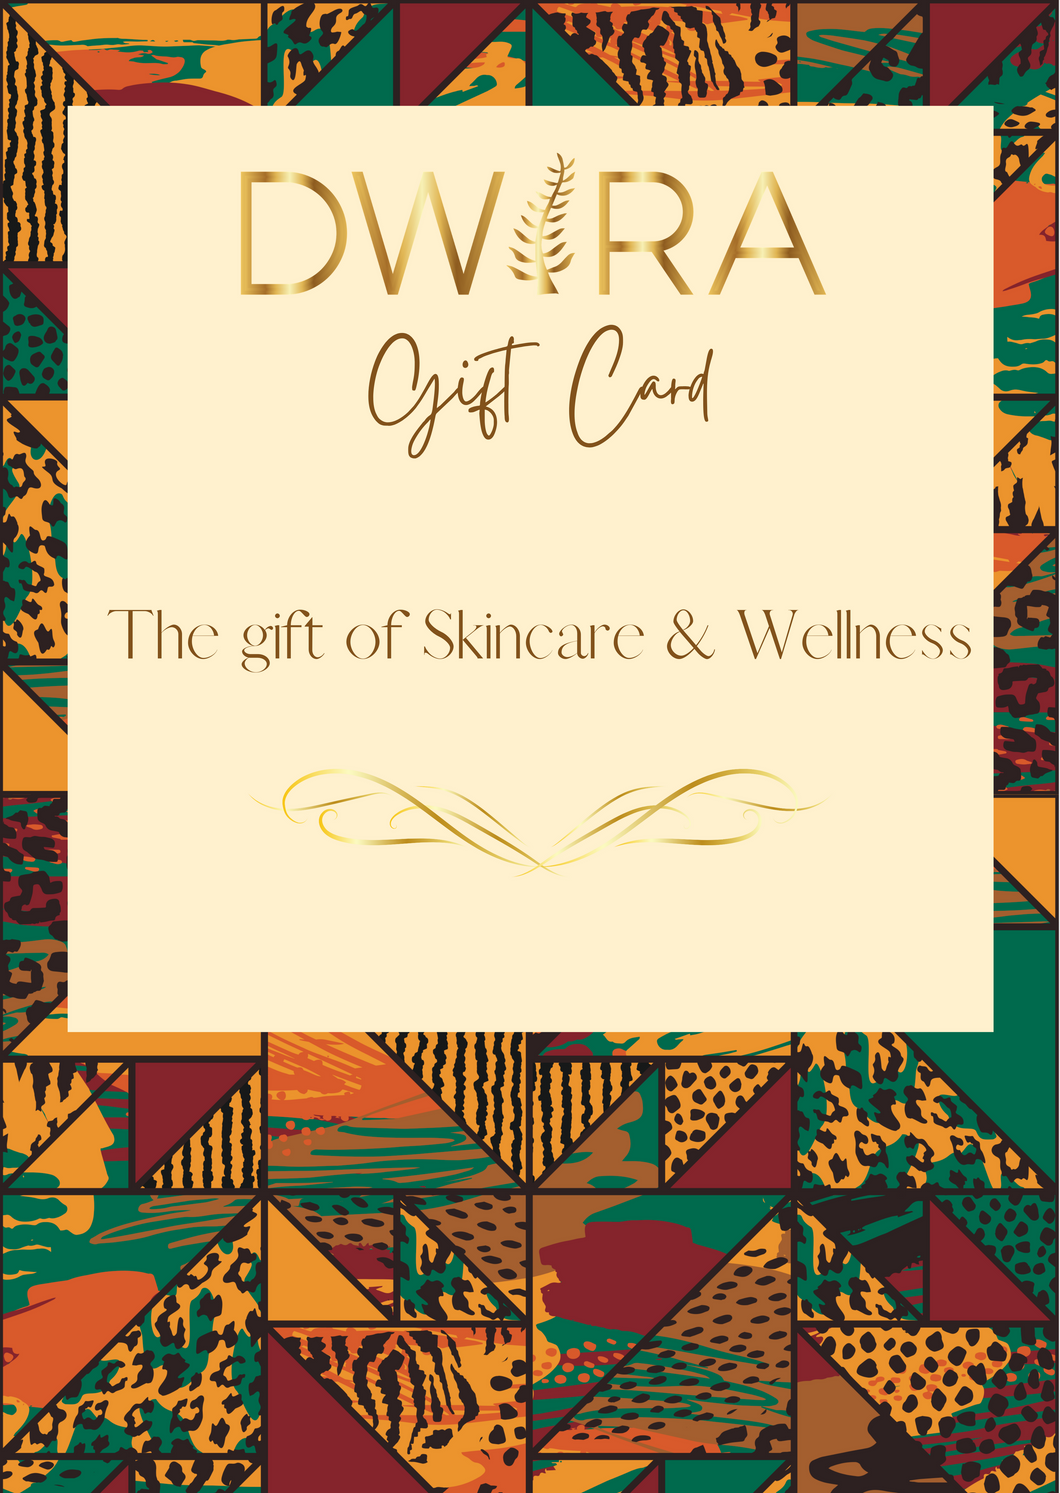 DWIRA Gift Card